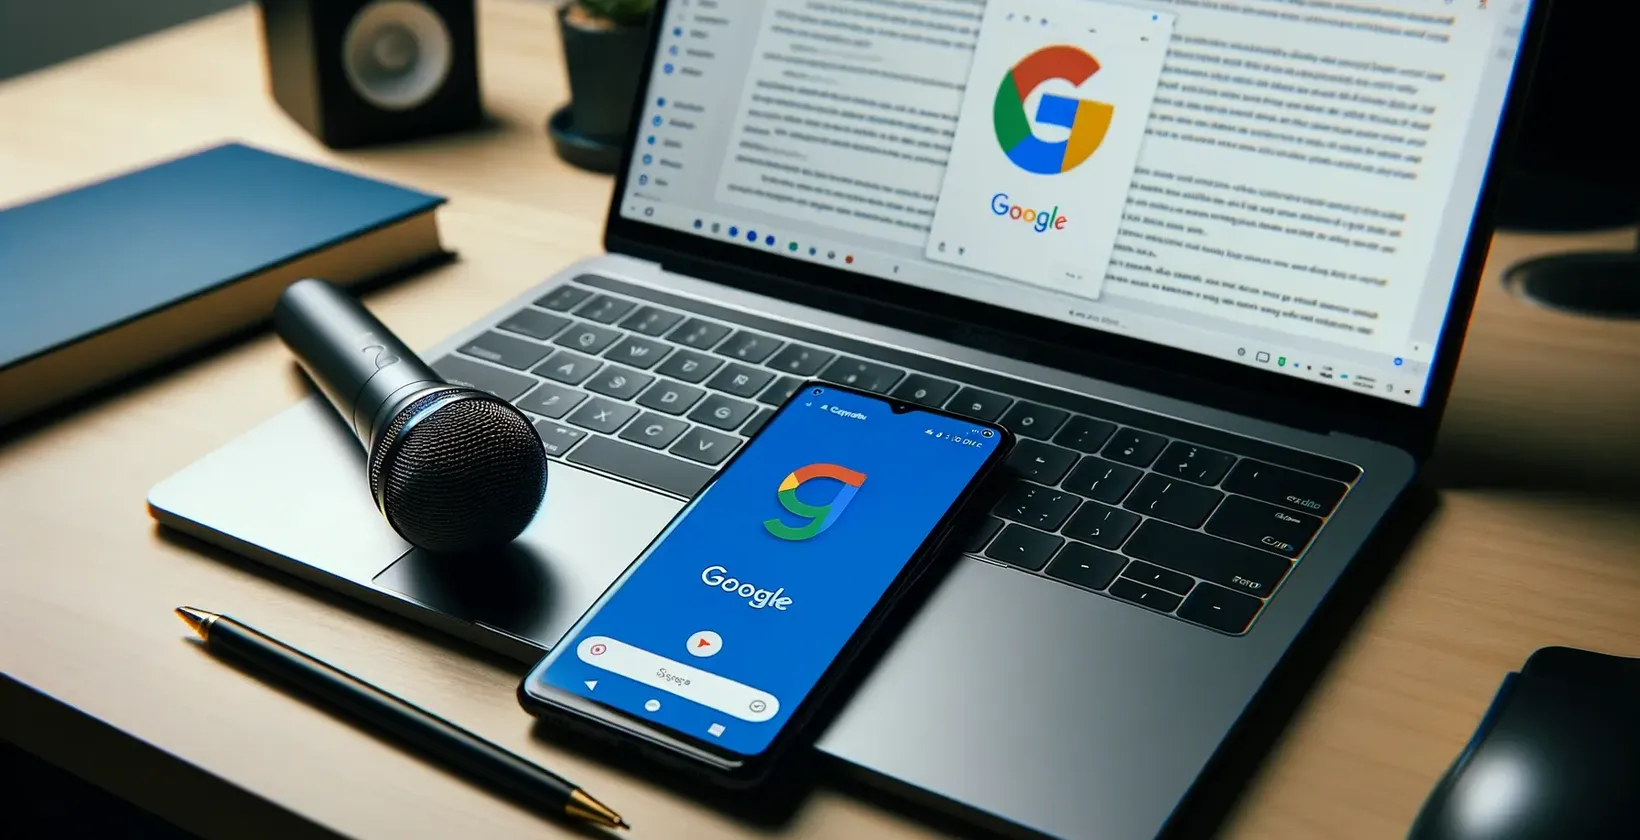 Google fokuseret arbejdsområde med laptop, der viser et dokument, smartphone med logo, mikrofon på touchpad og en notebook-pen.